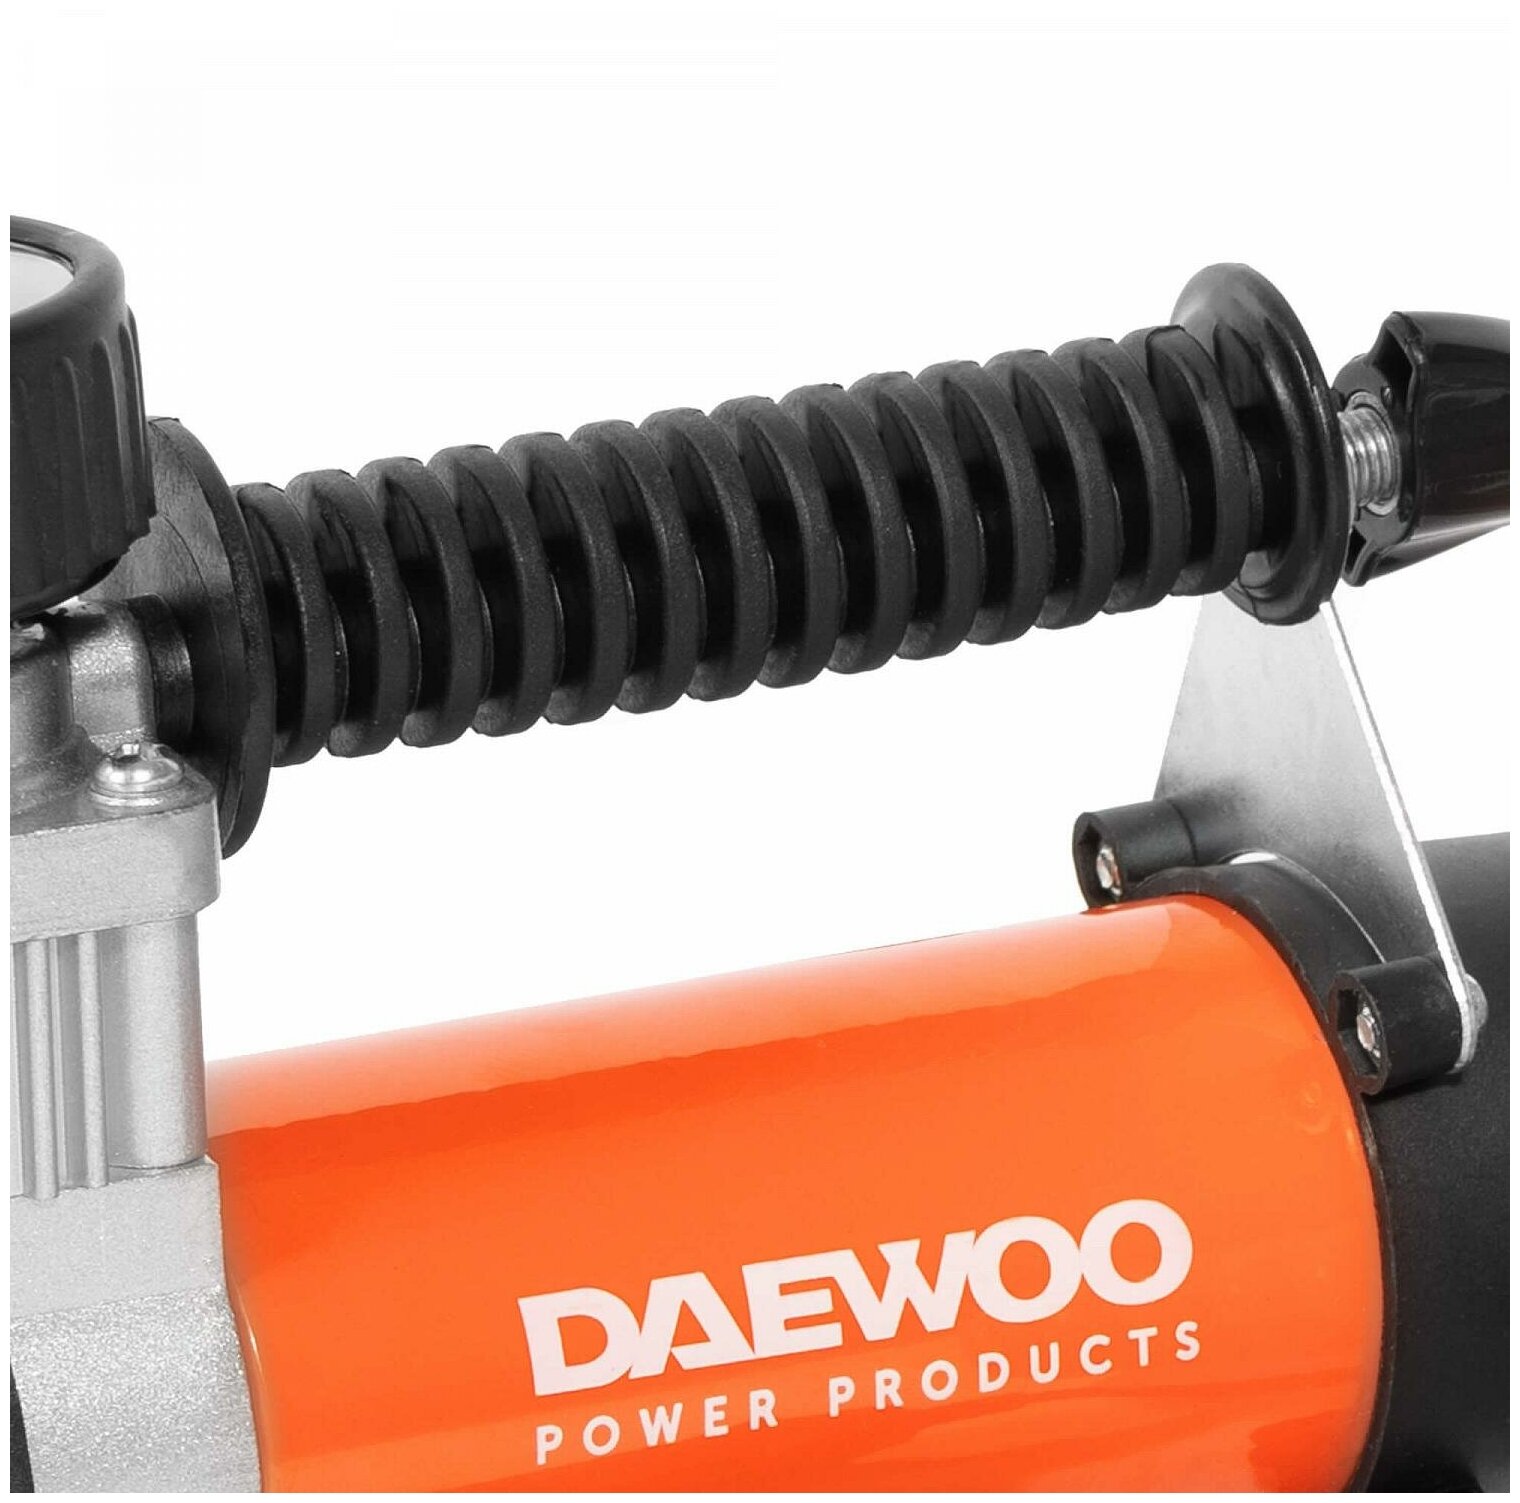 Автомобильный компрессор Daewoo Power Products DW55 PLUS 50 л/мин 10 атм